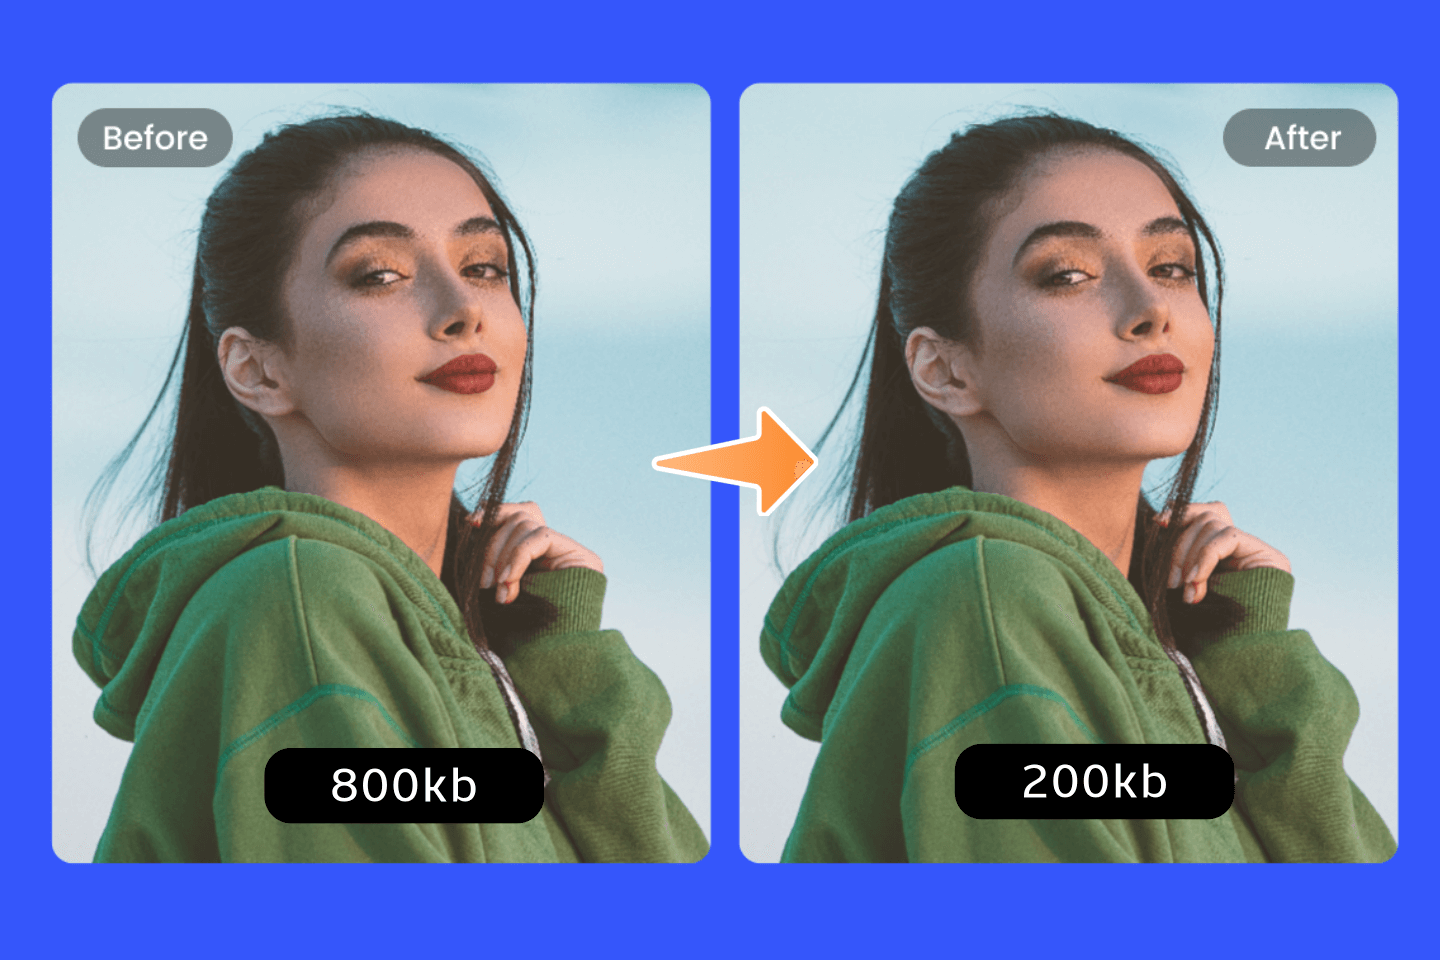 Compresor de imágenes: Reducir tamaño fotos online rápidamente | Fotor